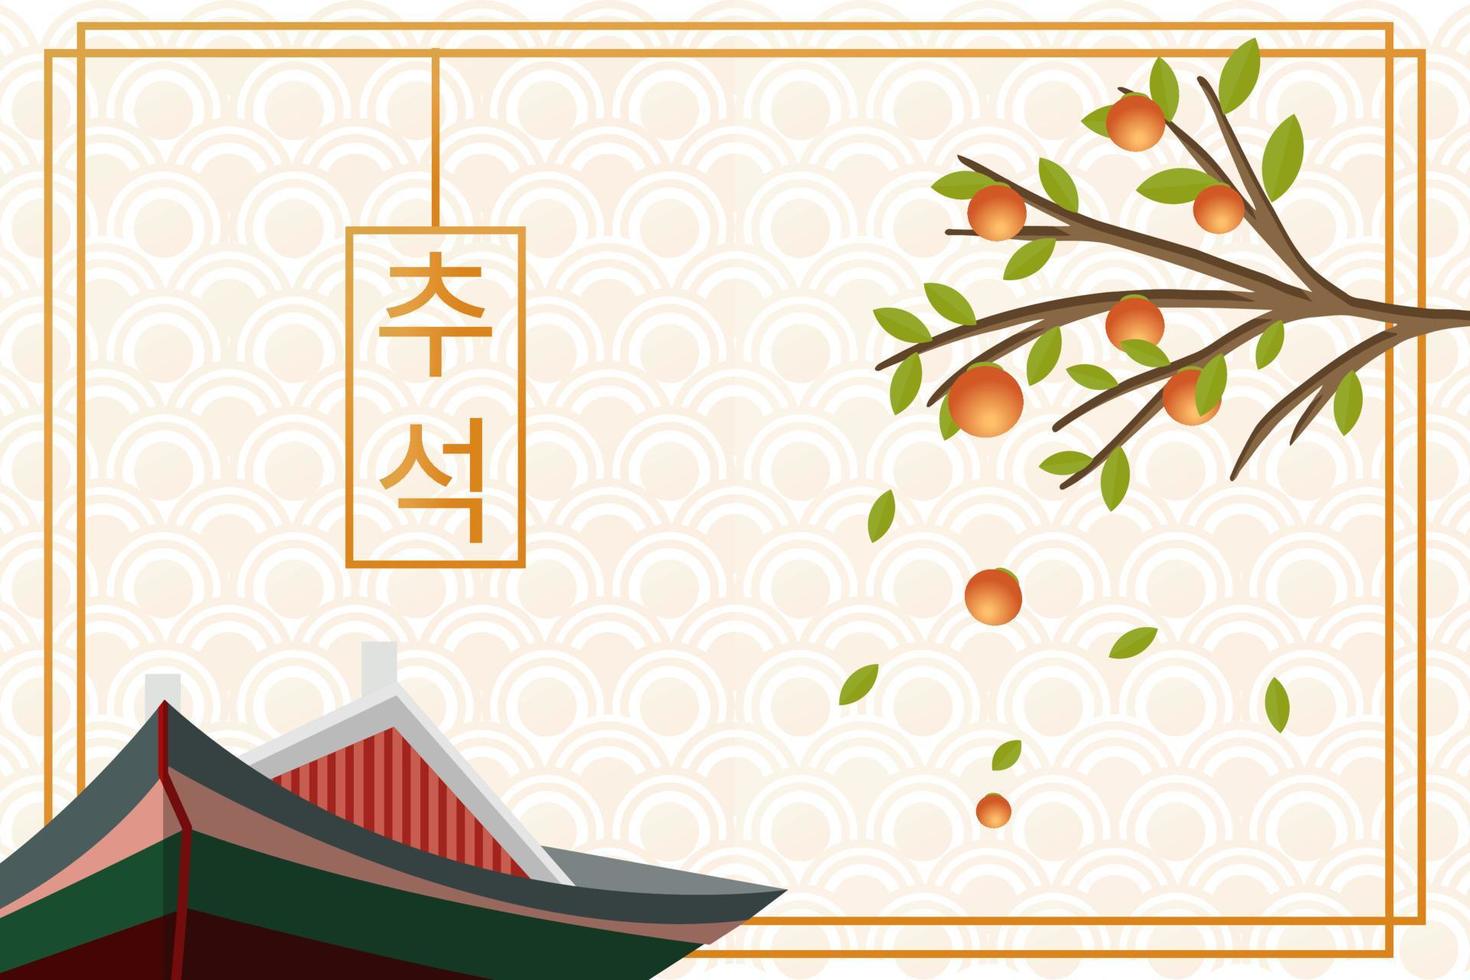 chuseok de corea, vector de fondo tradicional coreano con palacio de corea